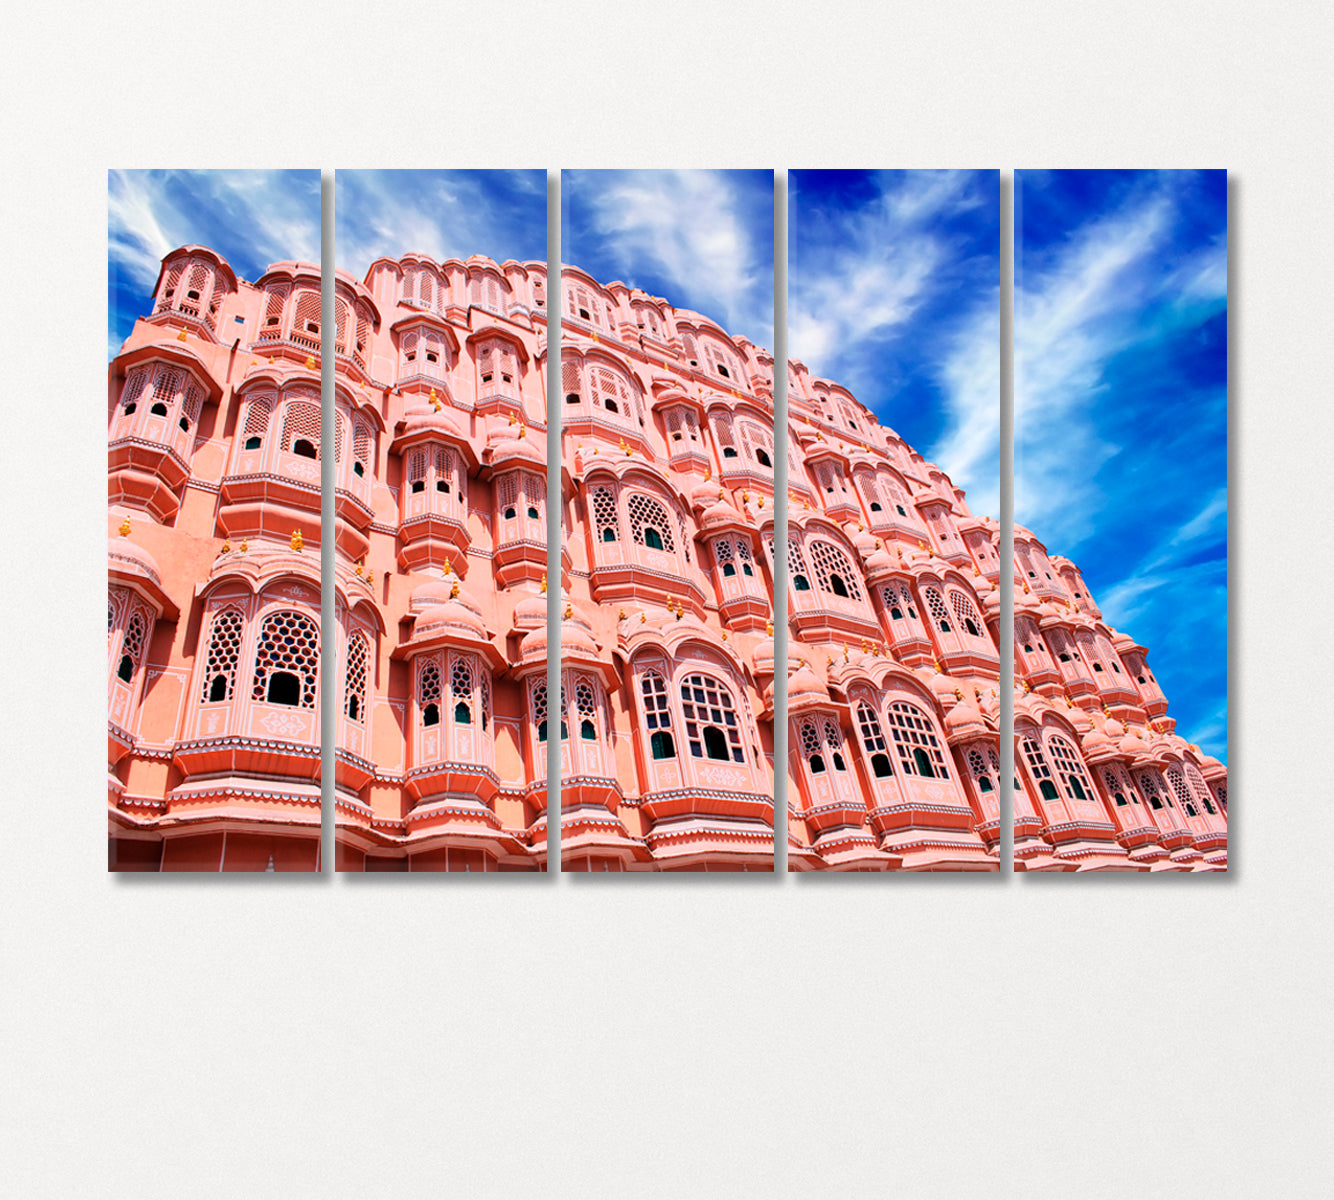 Hawa Mahal India Canvas Print-Canvas Print-CetArt-5 Panels-36x24 inches-CetArt